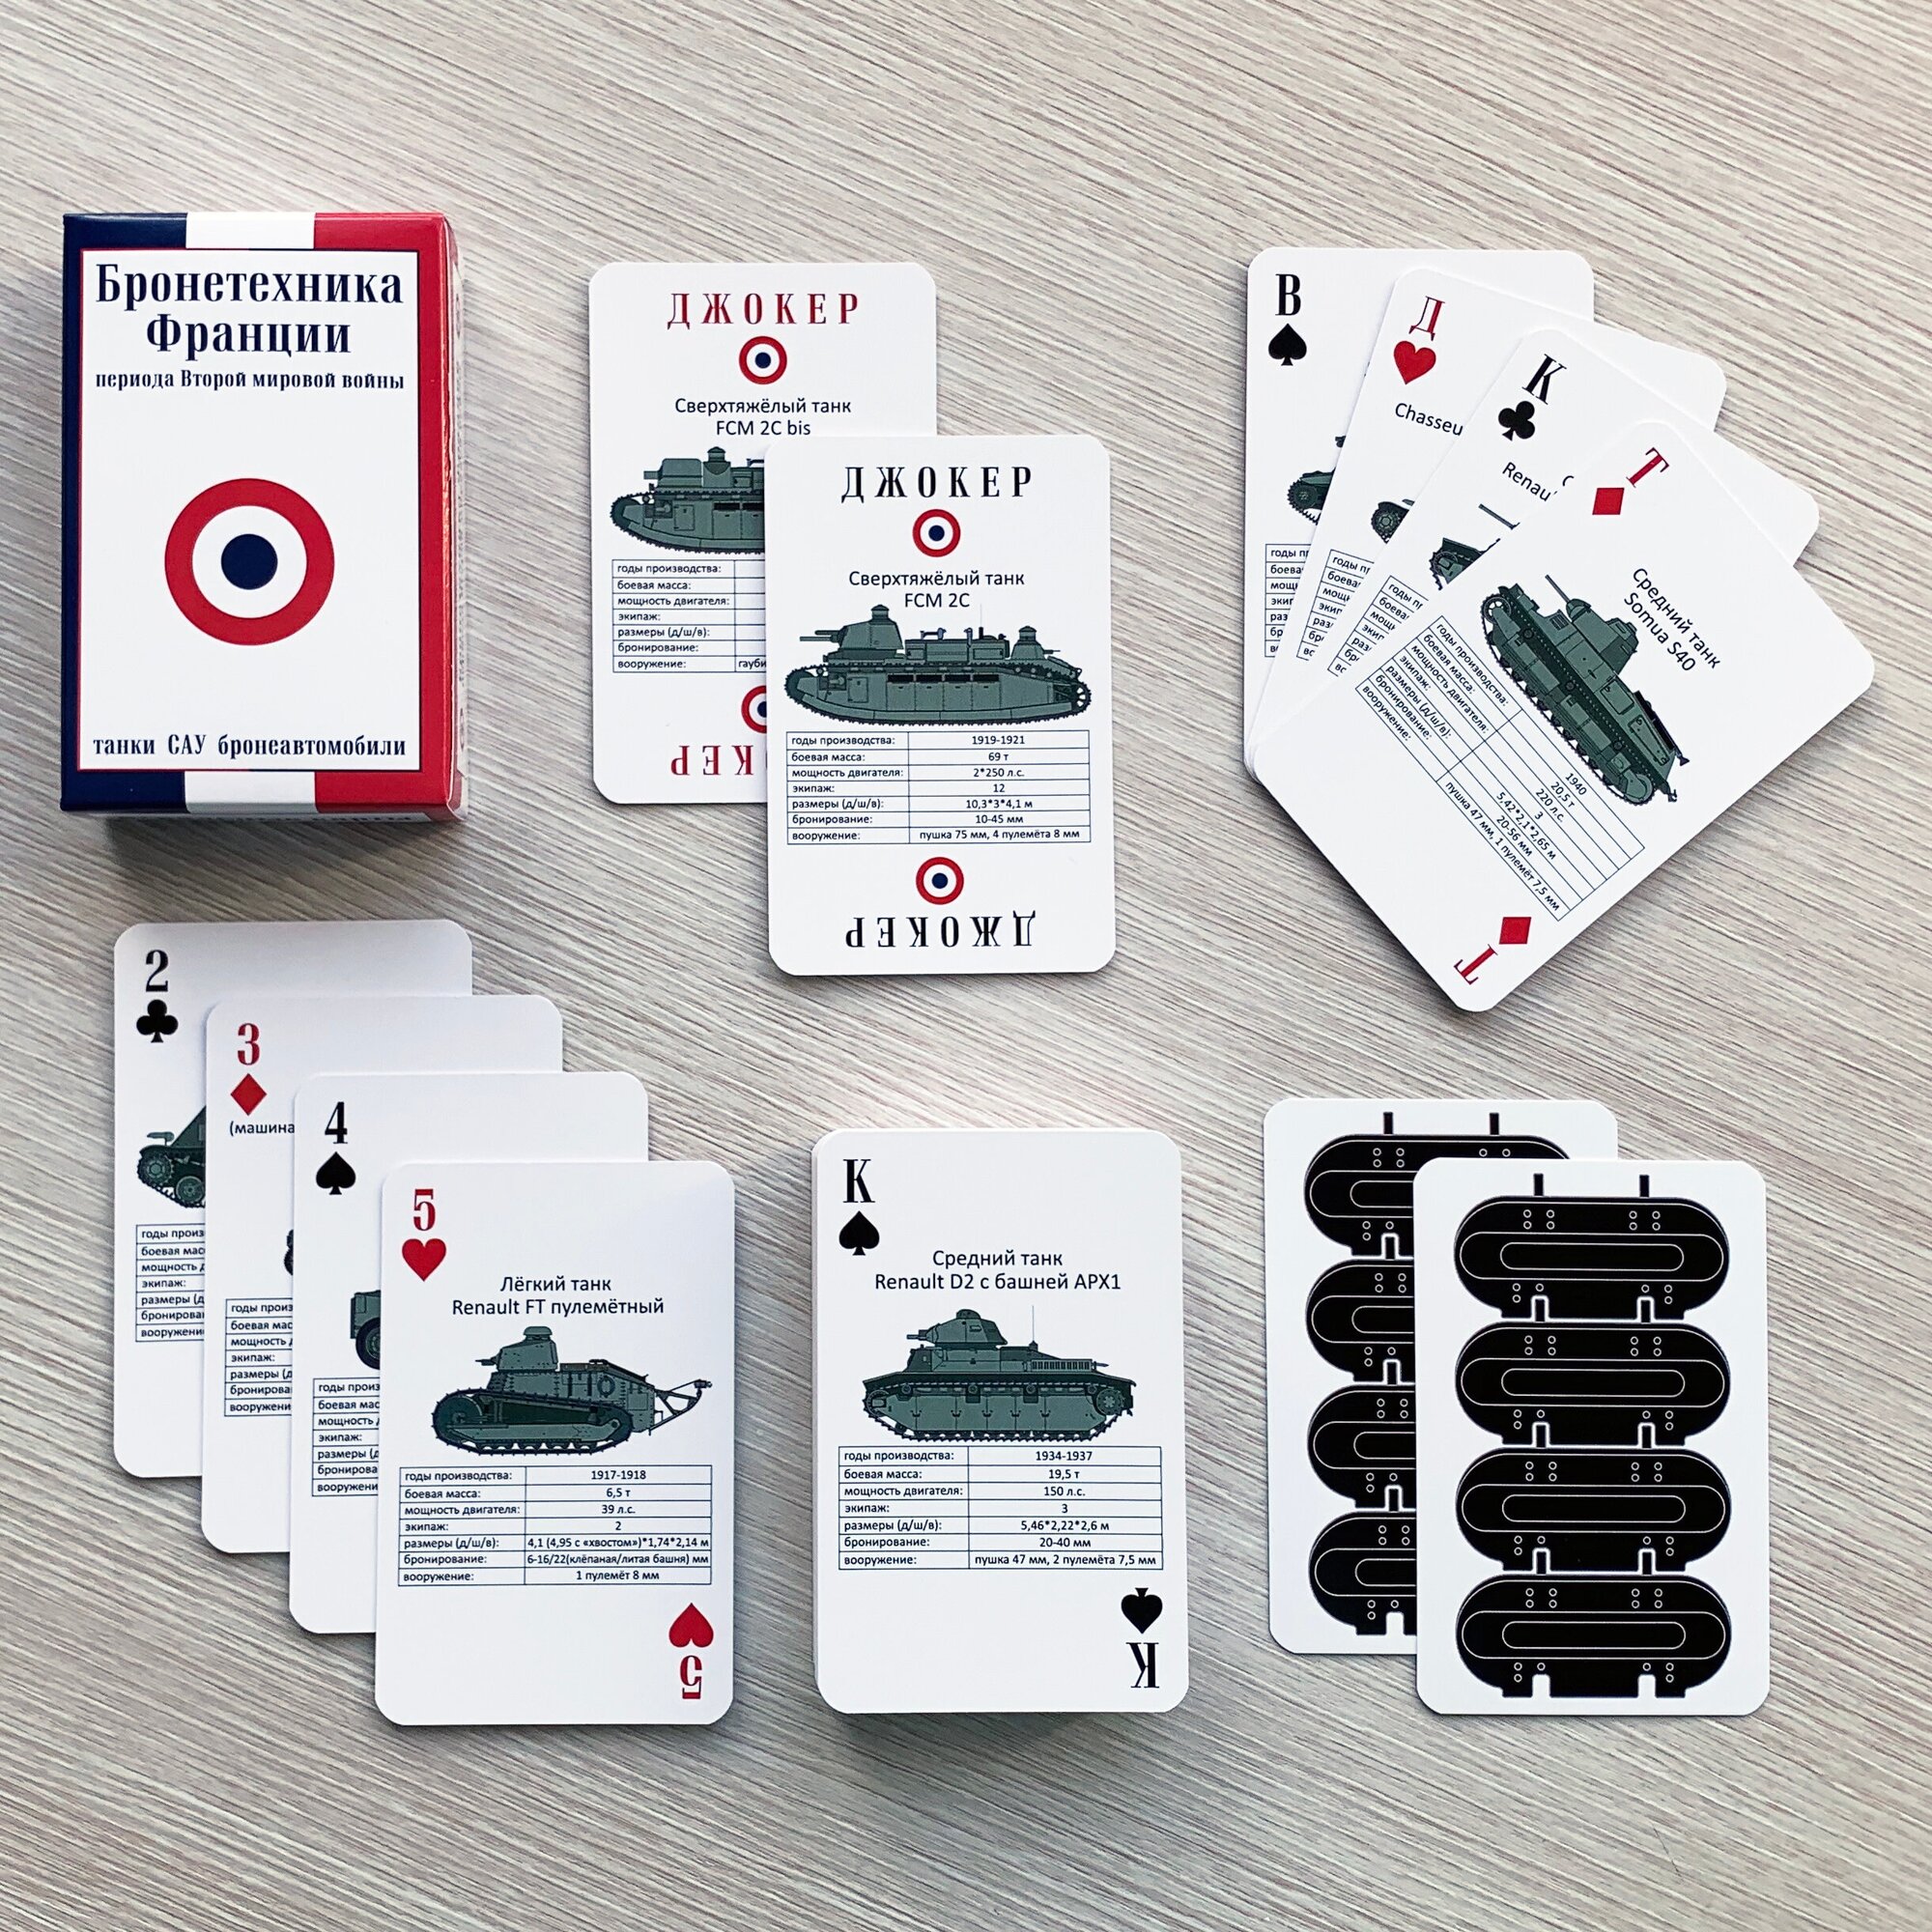 Игральные карты "Бронетехника Франции периода Второй мировой войны", танки, САУ и бронеавтомобили Франции (вид 2). Подарок танкисту